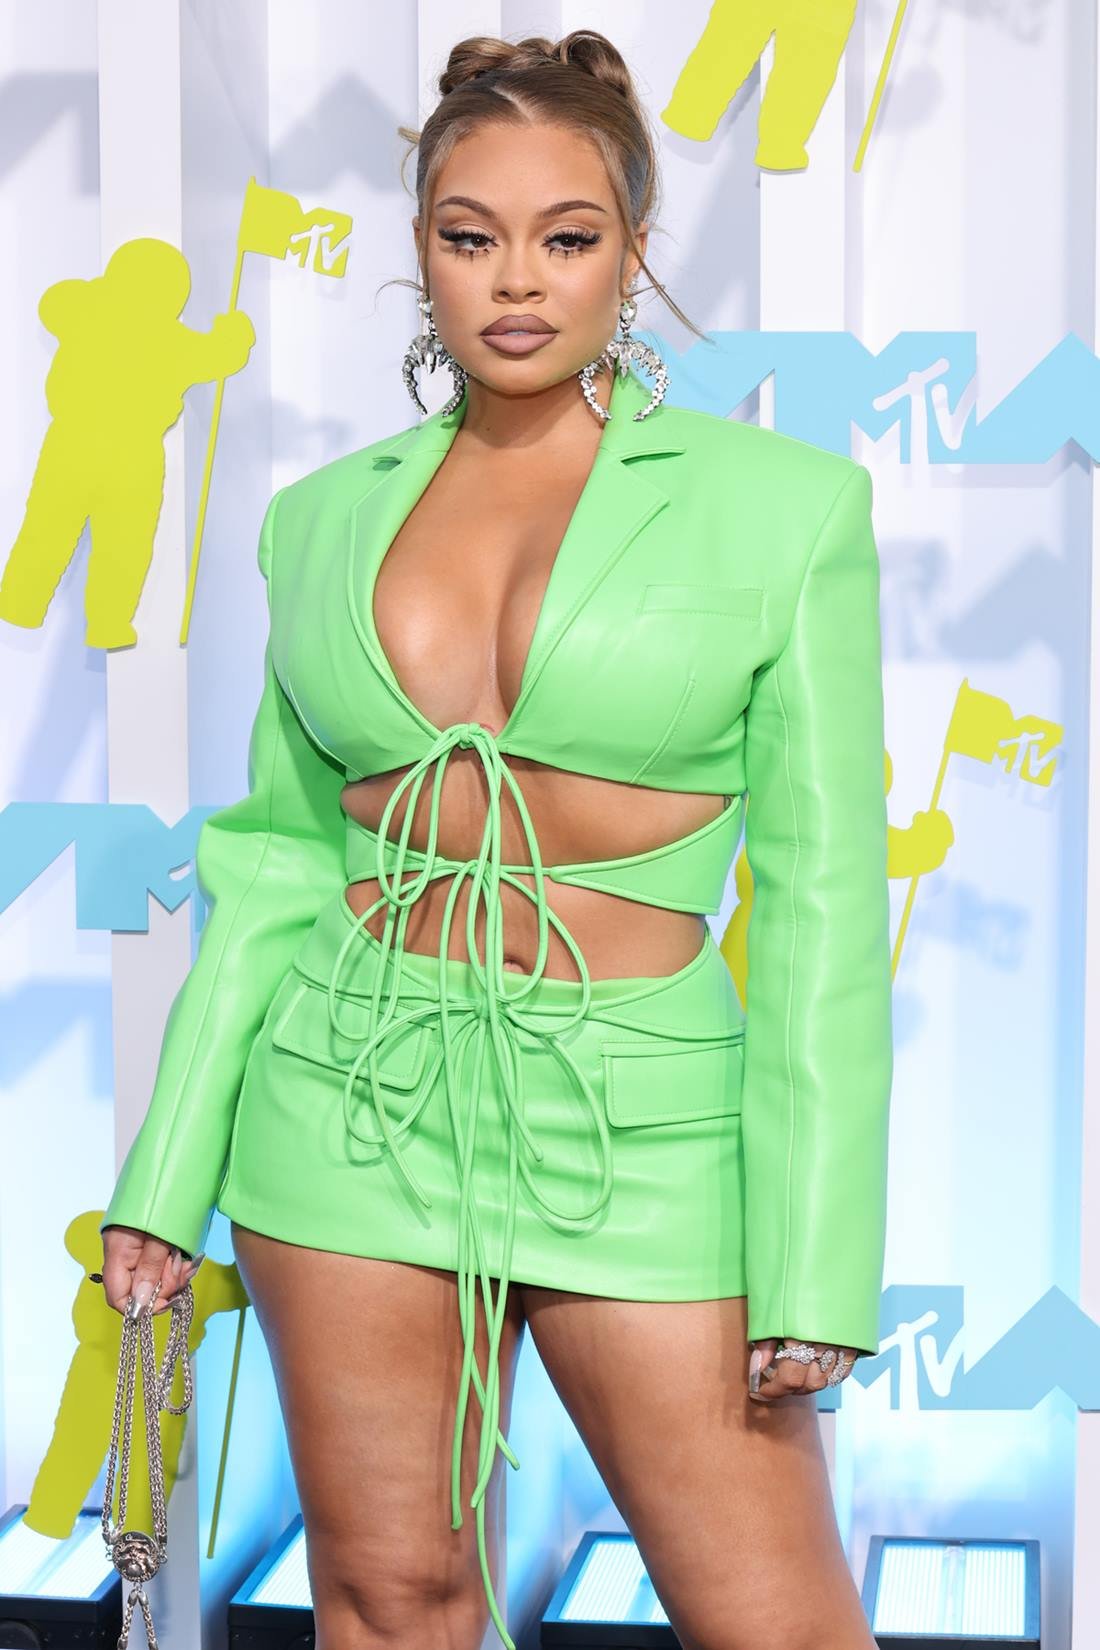 A cantora Big Latto, uma mulher branca e jovem, de cabelo liso loiro, posa para foto na premiação MTV Awards. Ela usa um vestido estilo blazer com recortes e amarrações na cor verde e um brinco de argola dourada. - Metrópoles